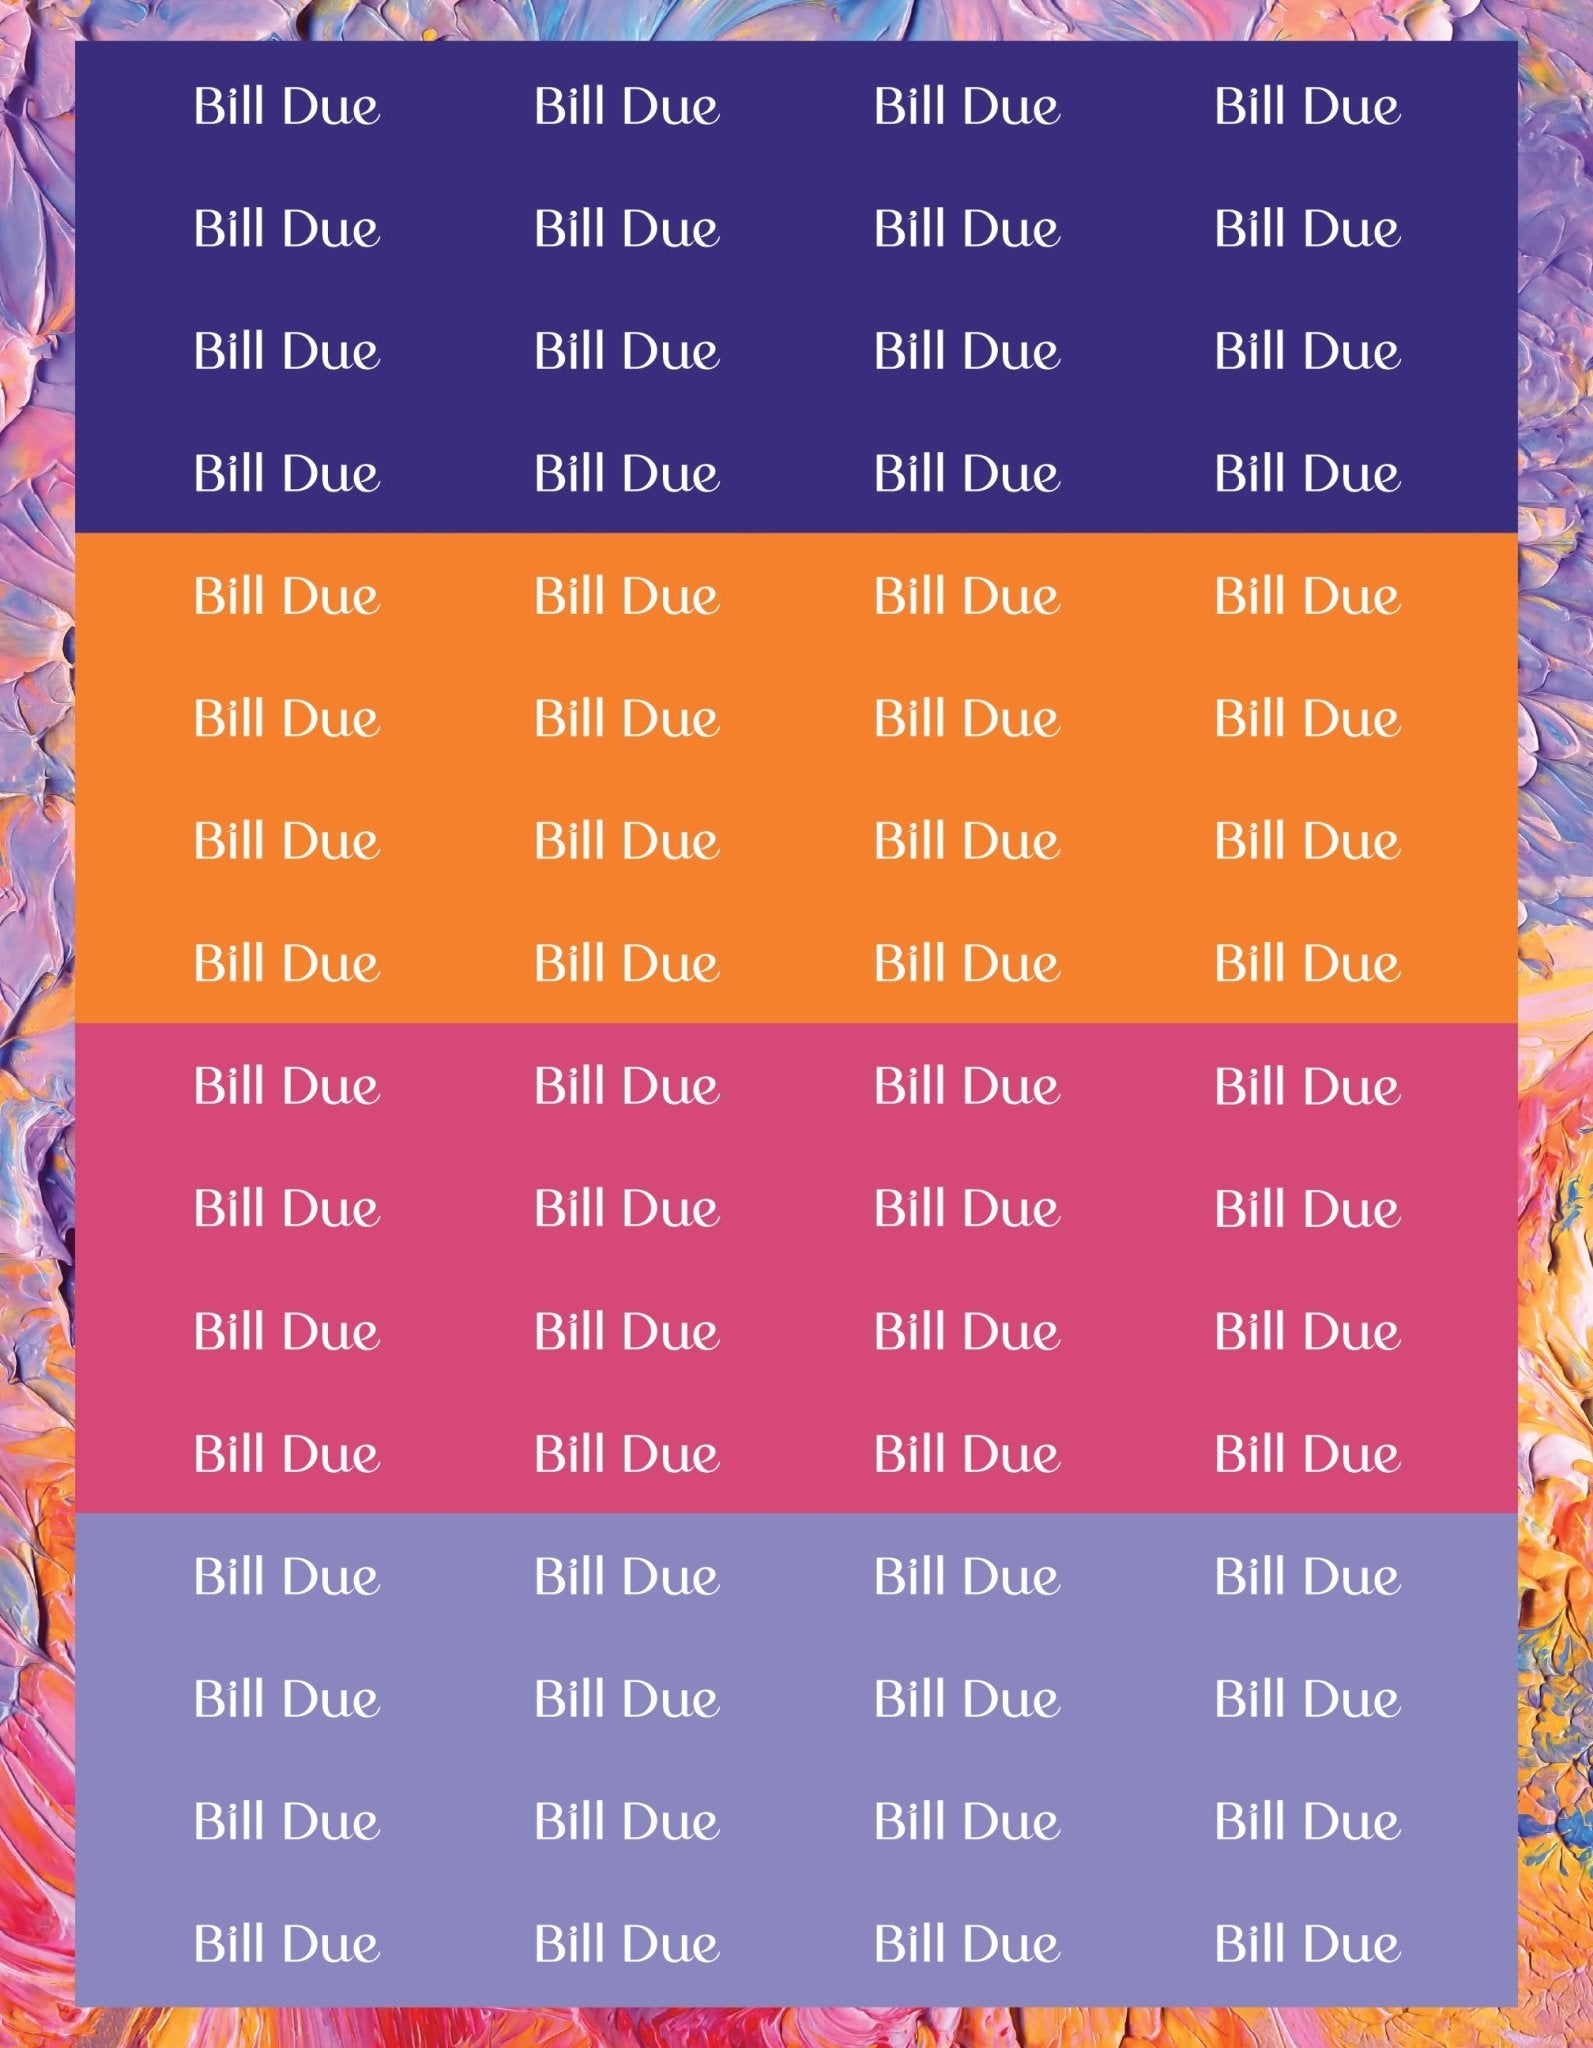 Bill Due Sticker Sheets - 9 Designs/Colors - Colibri Paper Co